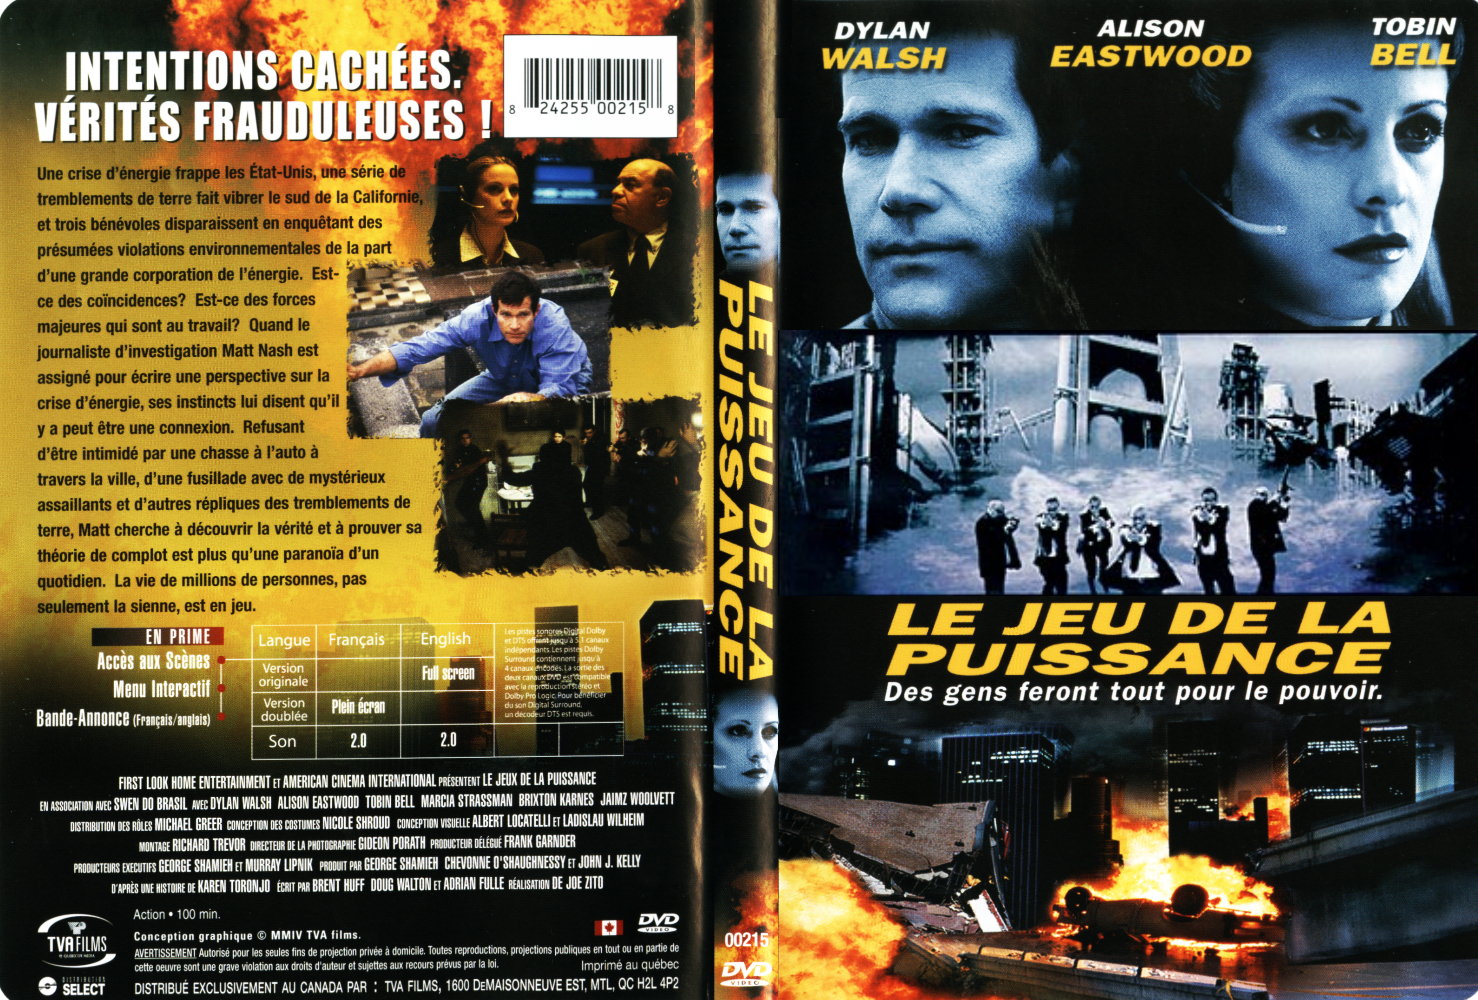 Jaquette DVD Le jeu de la puissance (2004)